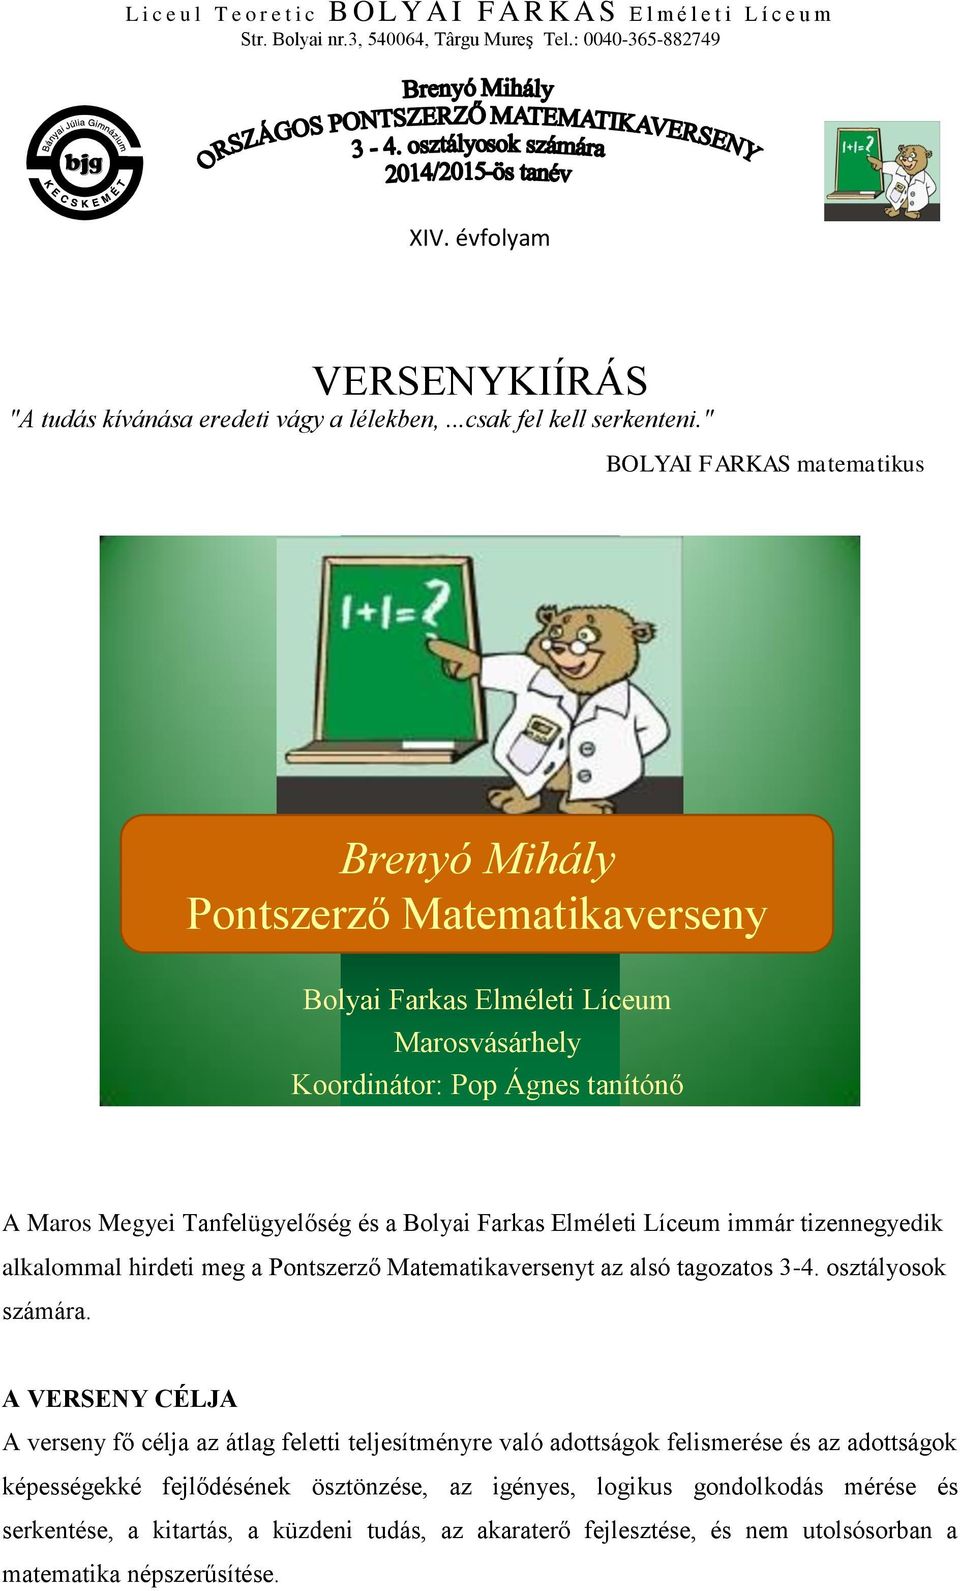 Brenyó Mihály Pontszerző Matematikaverseny - PDF Ingyenes letöltés